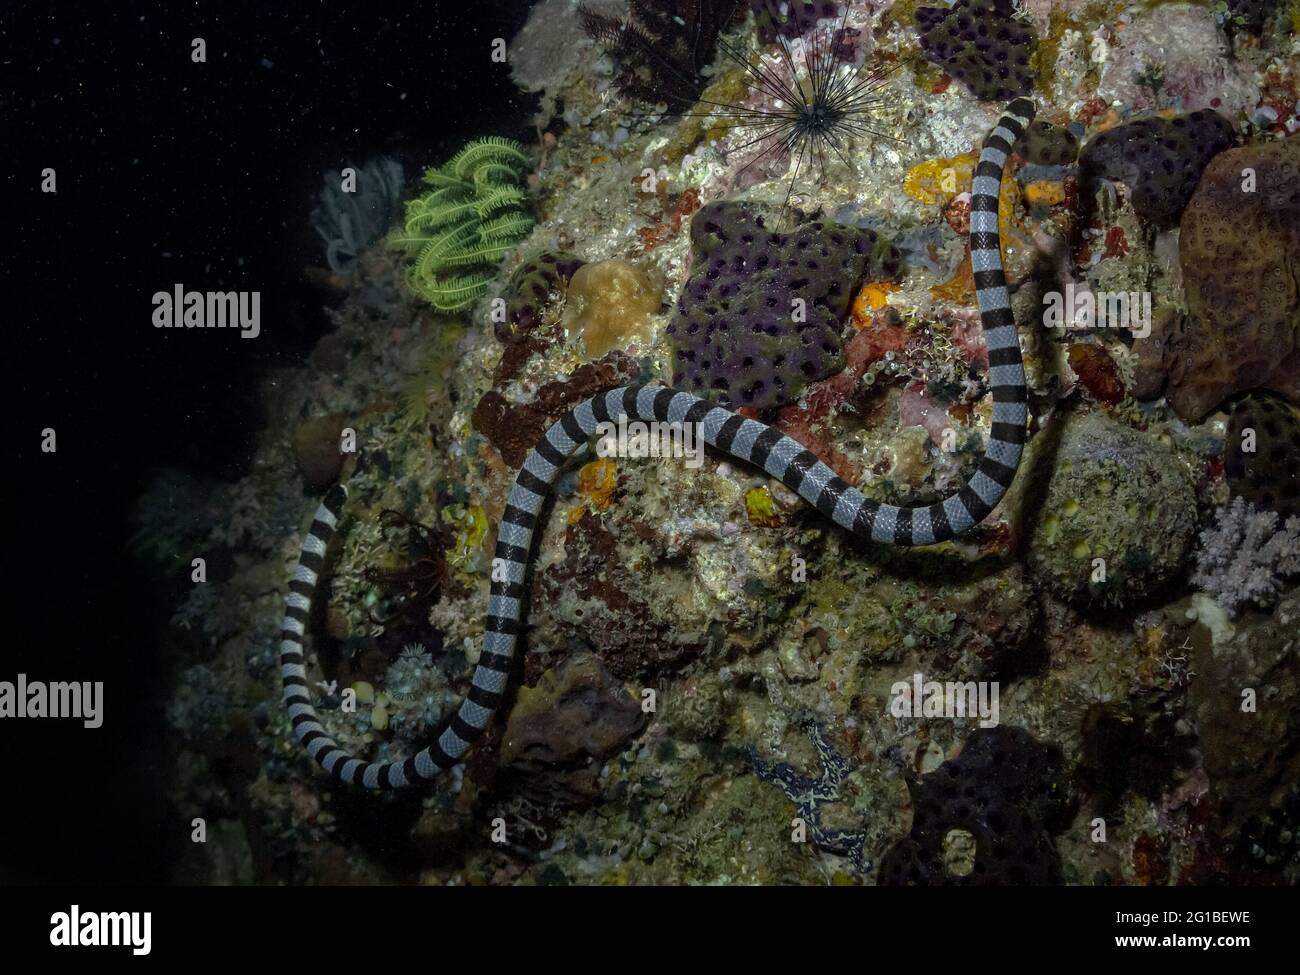 Serpente di mare con ornamento a righe sul corpo strisciato su barriere coralline ruvide in acqua Foto Stock